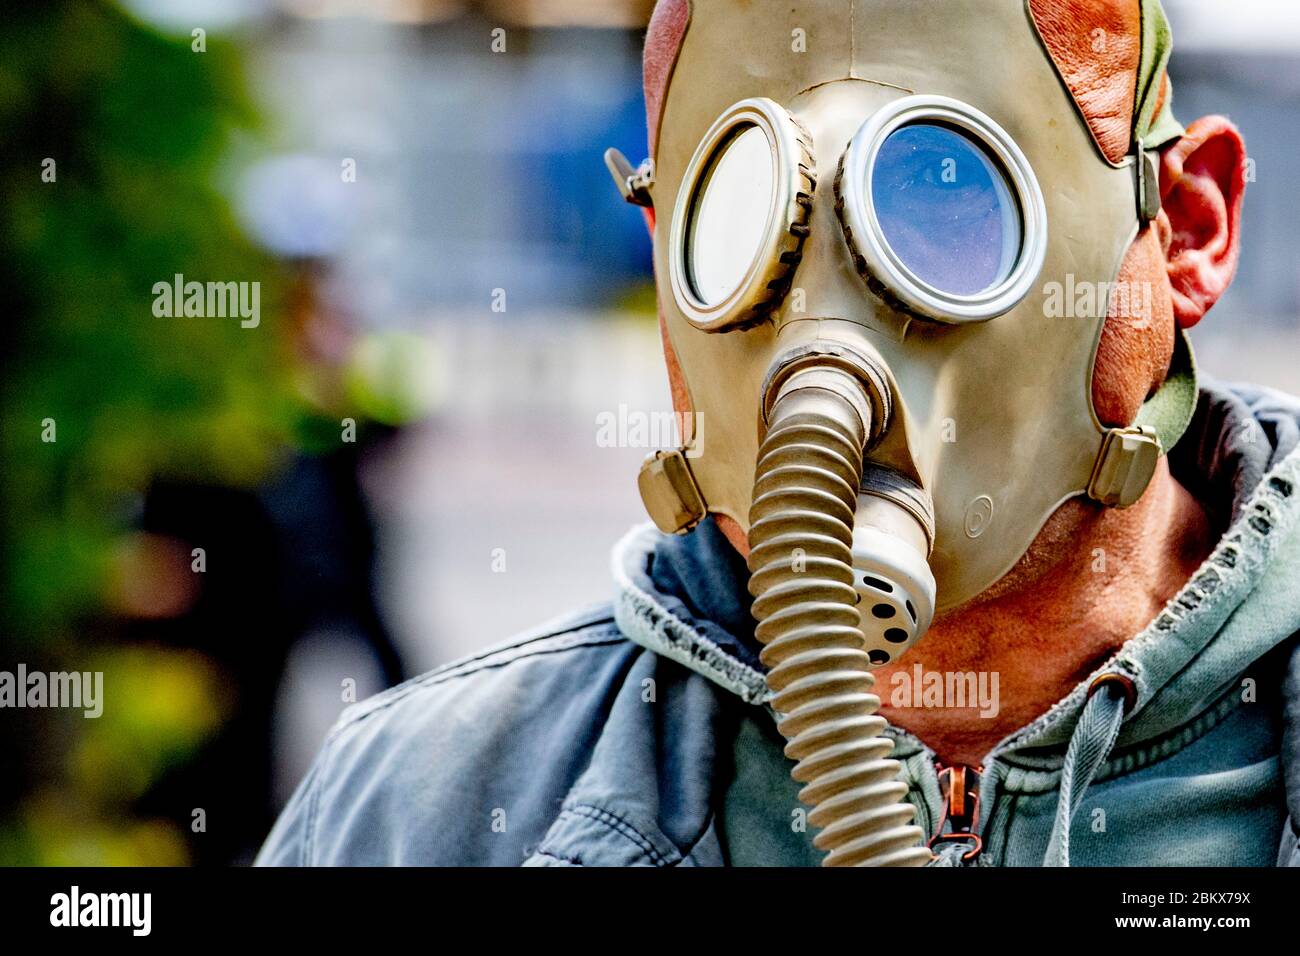 Un dimostratore che indossa una maschera a gas durante la protesta.decine di attivisti anti-blocco sono stati arrestati mentre dimostravano contro le misure contro il virus corona all'Aia. Foto Stock